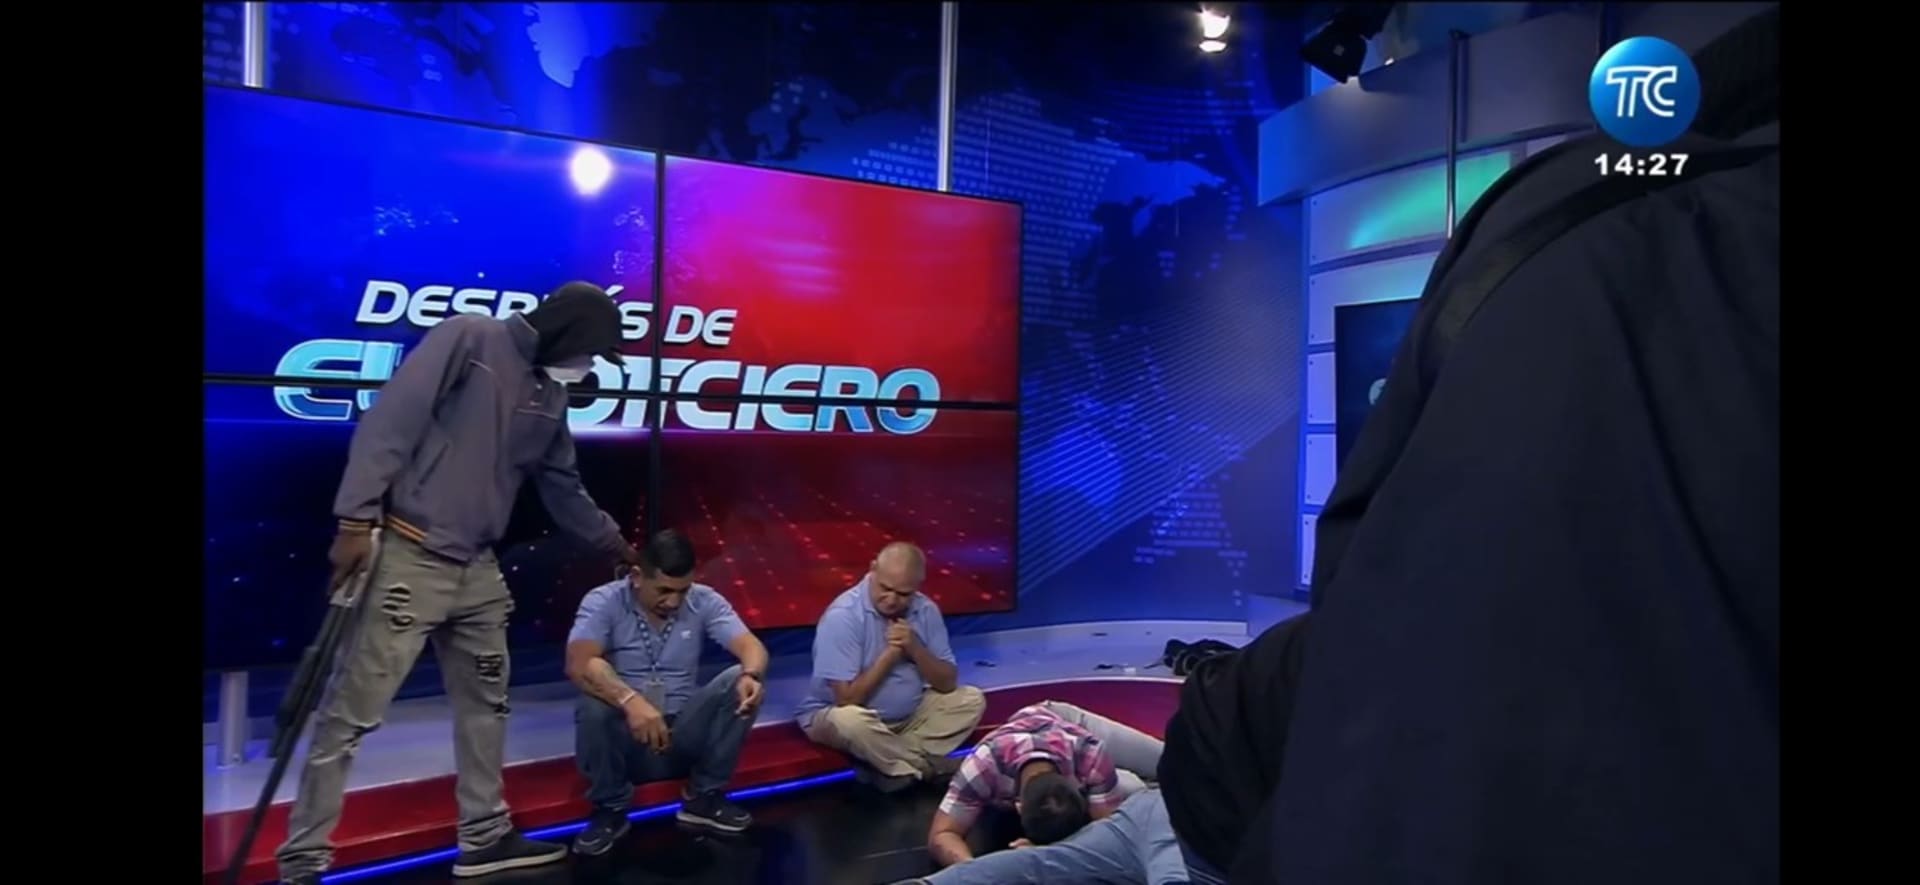 Do živého vysílání ekvádorské státní televize TC dnes večer SEČ vnikli ozbrojenci, kteří mířili zbraněmi na moderátory. 